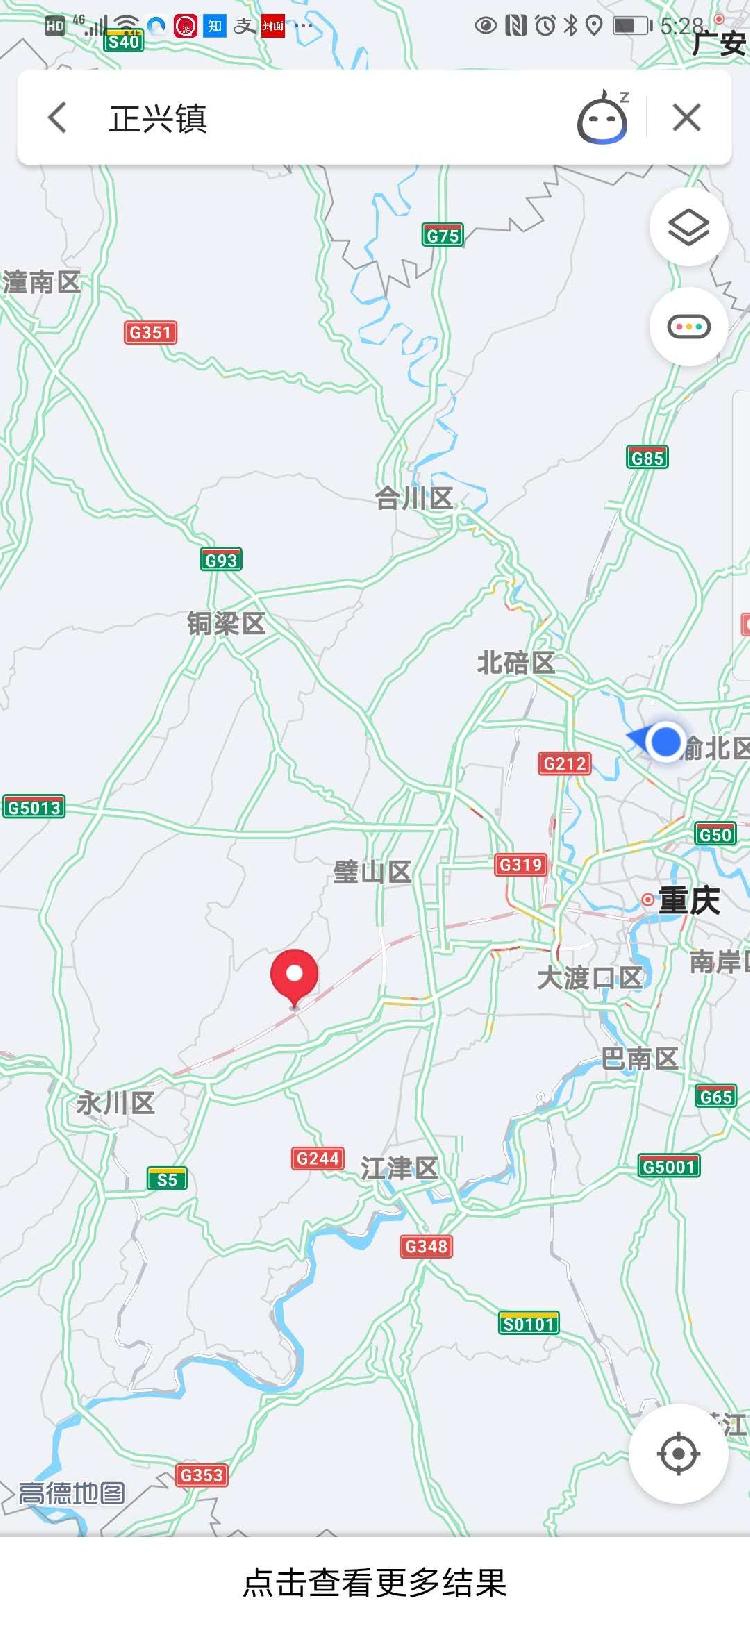 璧山正兴!重庆第二机场预选场址定了,将打造成为成渝中线高铁姊妹篇